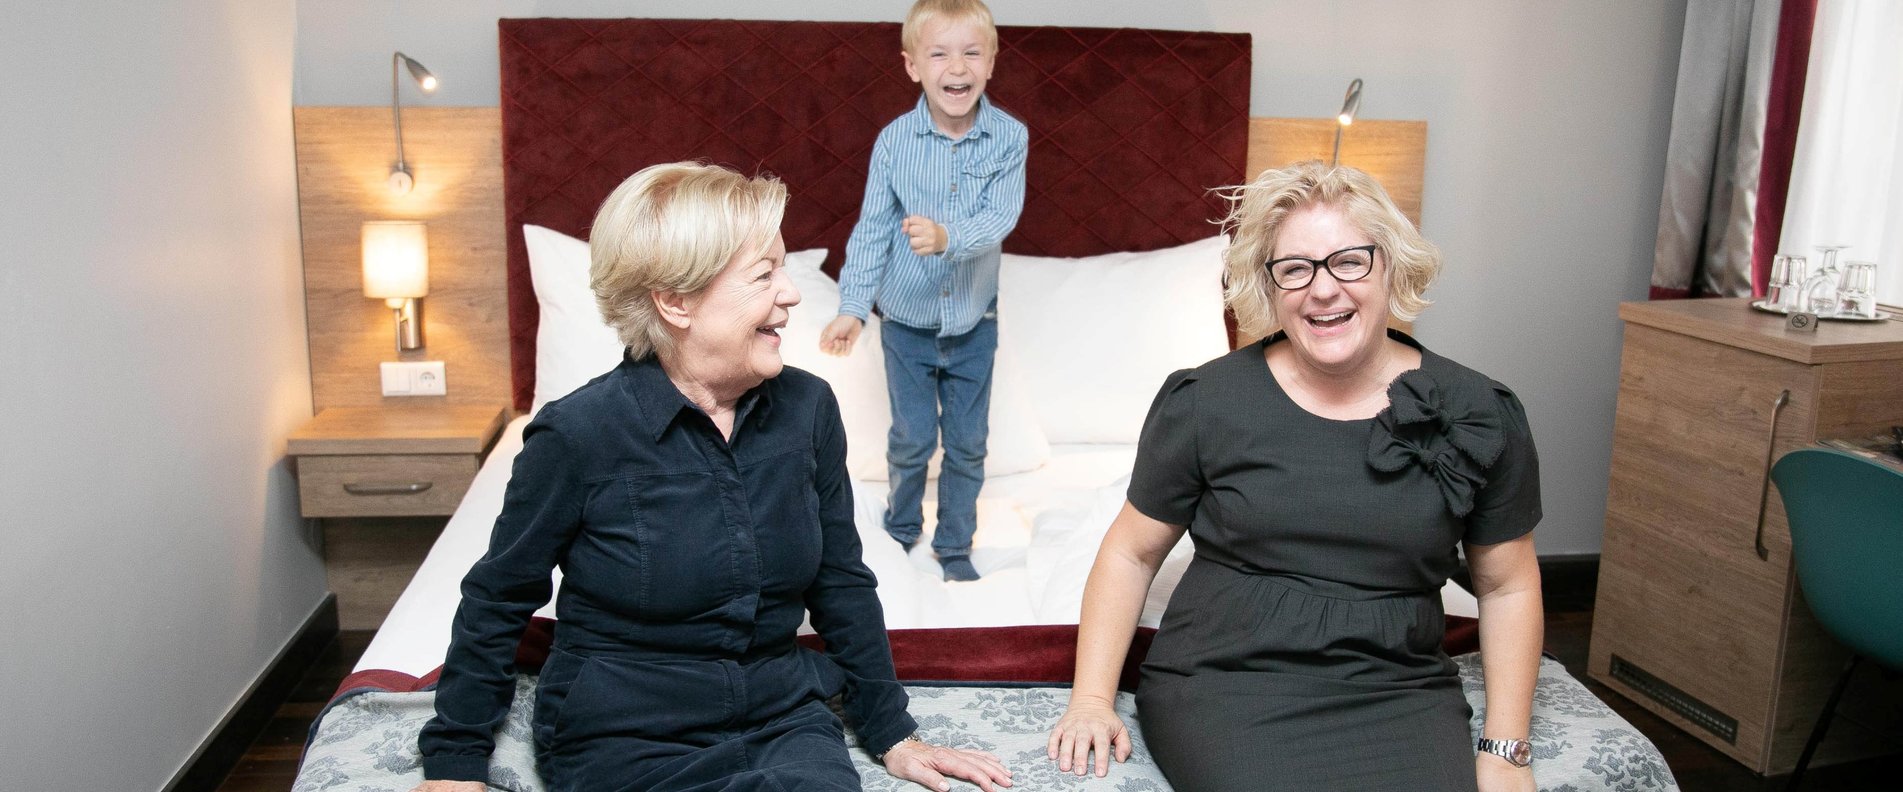 Bettina Mayr im Bild mit Seniorchefin Monika Mayr und Sohn Felix. | © Hotel Elefant/wildbild